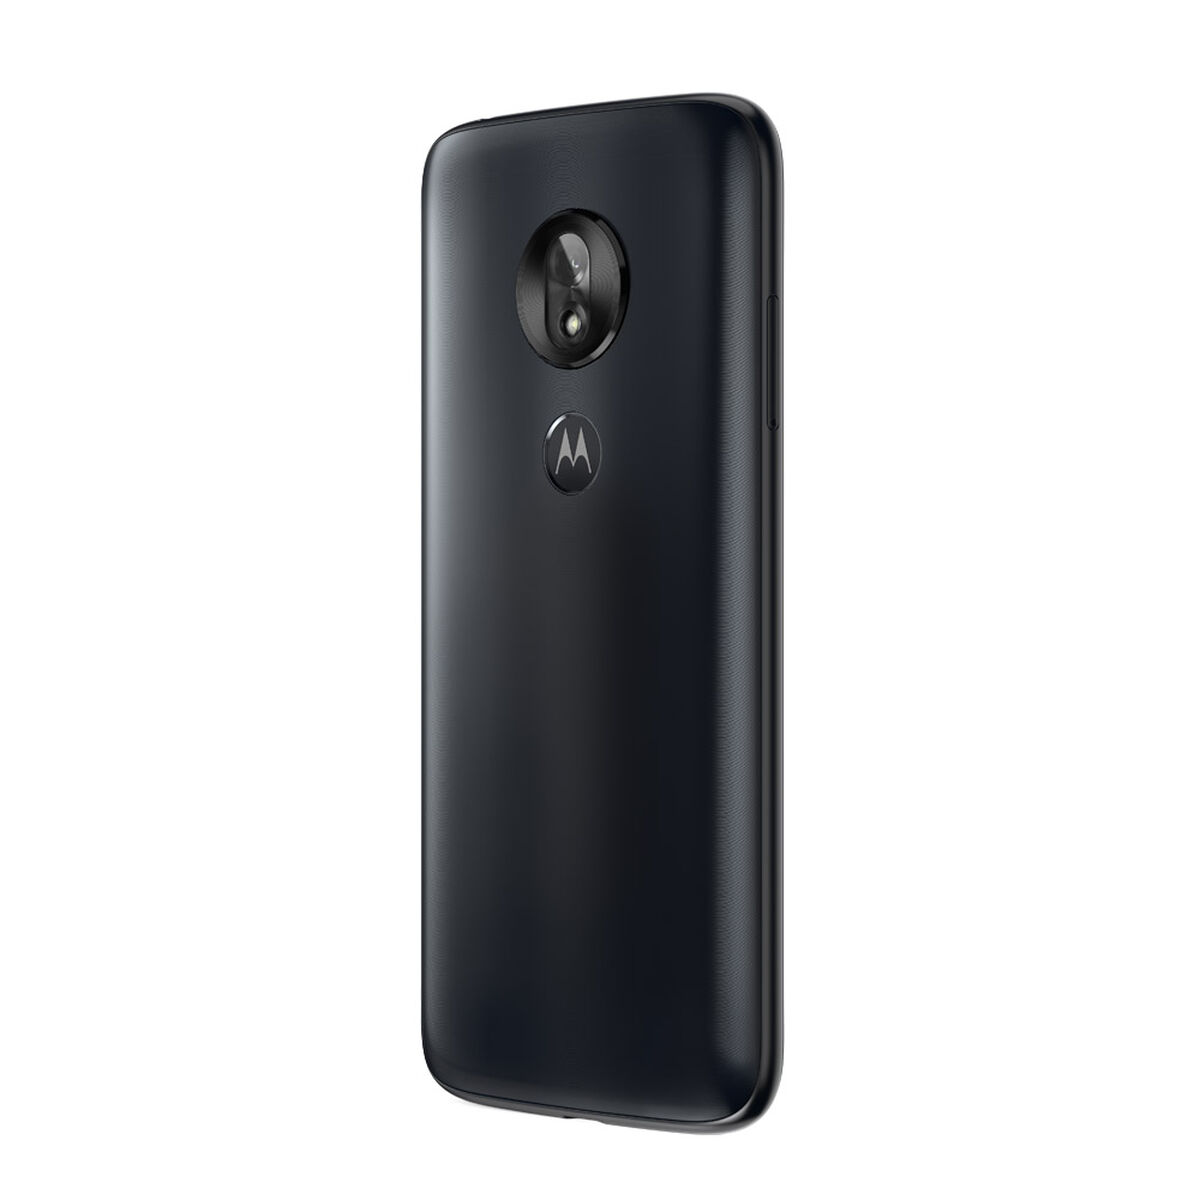 Celular Motorola G7 Play Índigo 5.7" Índigo Movistar